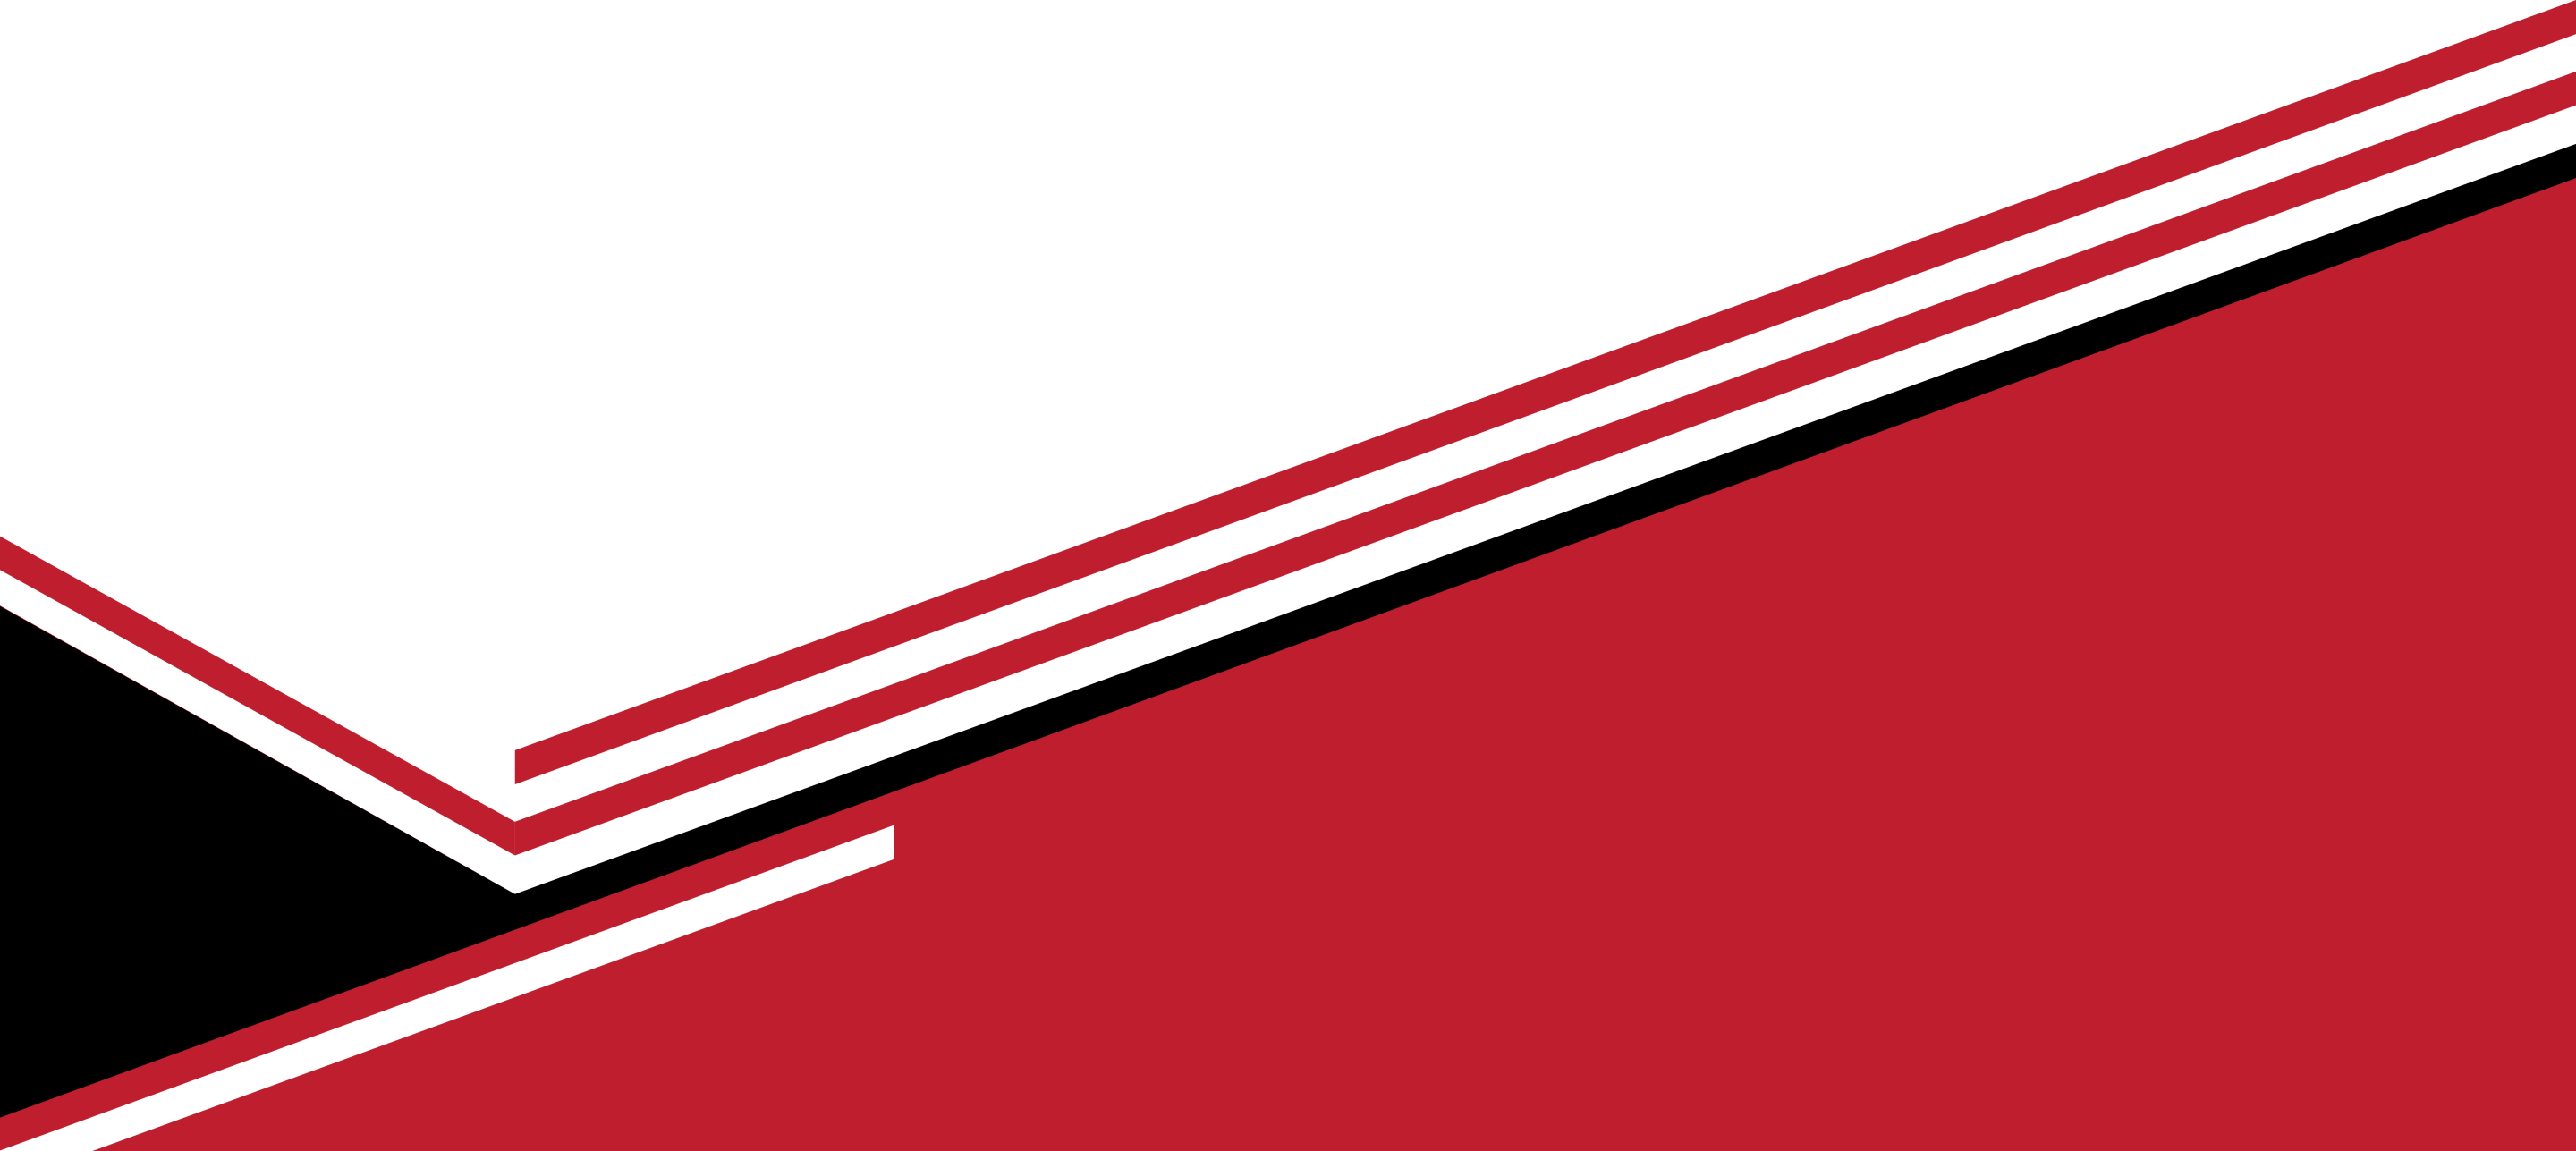 Gambar PNG abstrak merah